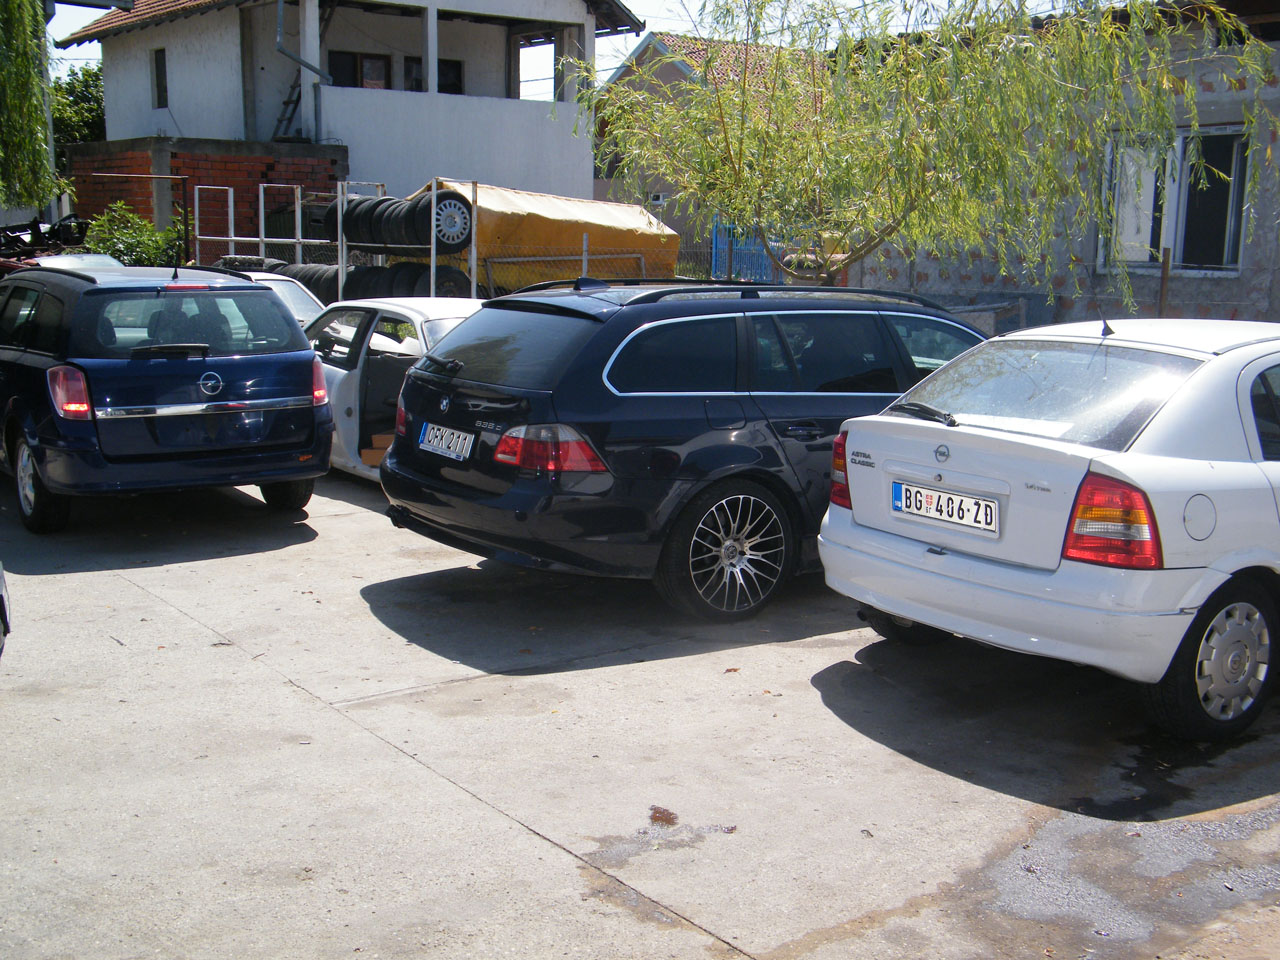 CAR DUMP AND SERVICE OPEL ZIKA I TEDI Car dumps Belgrade - Photo 1